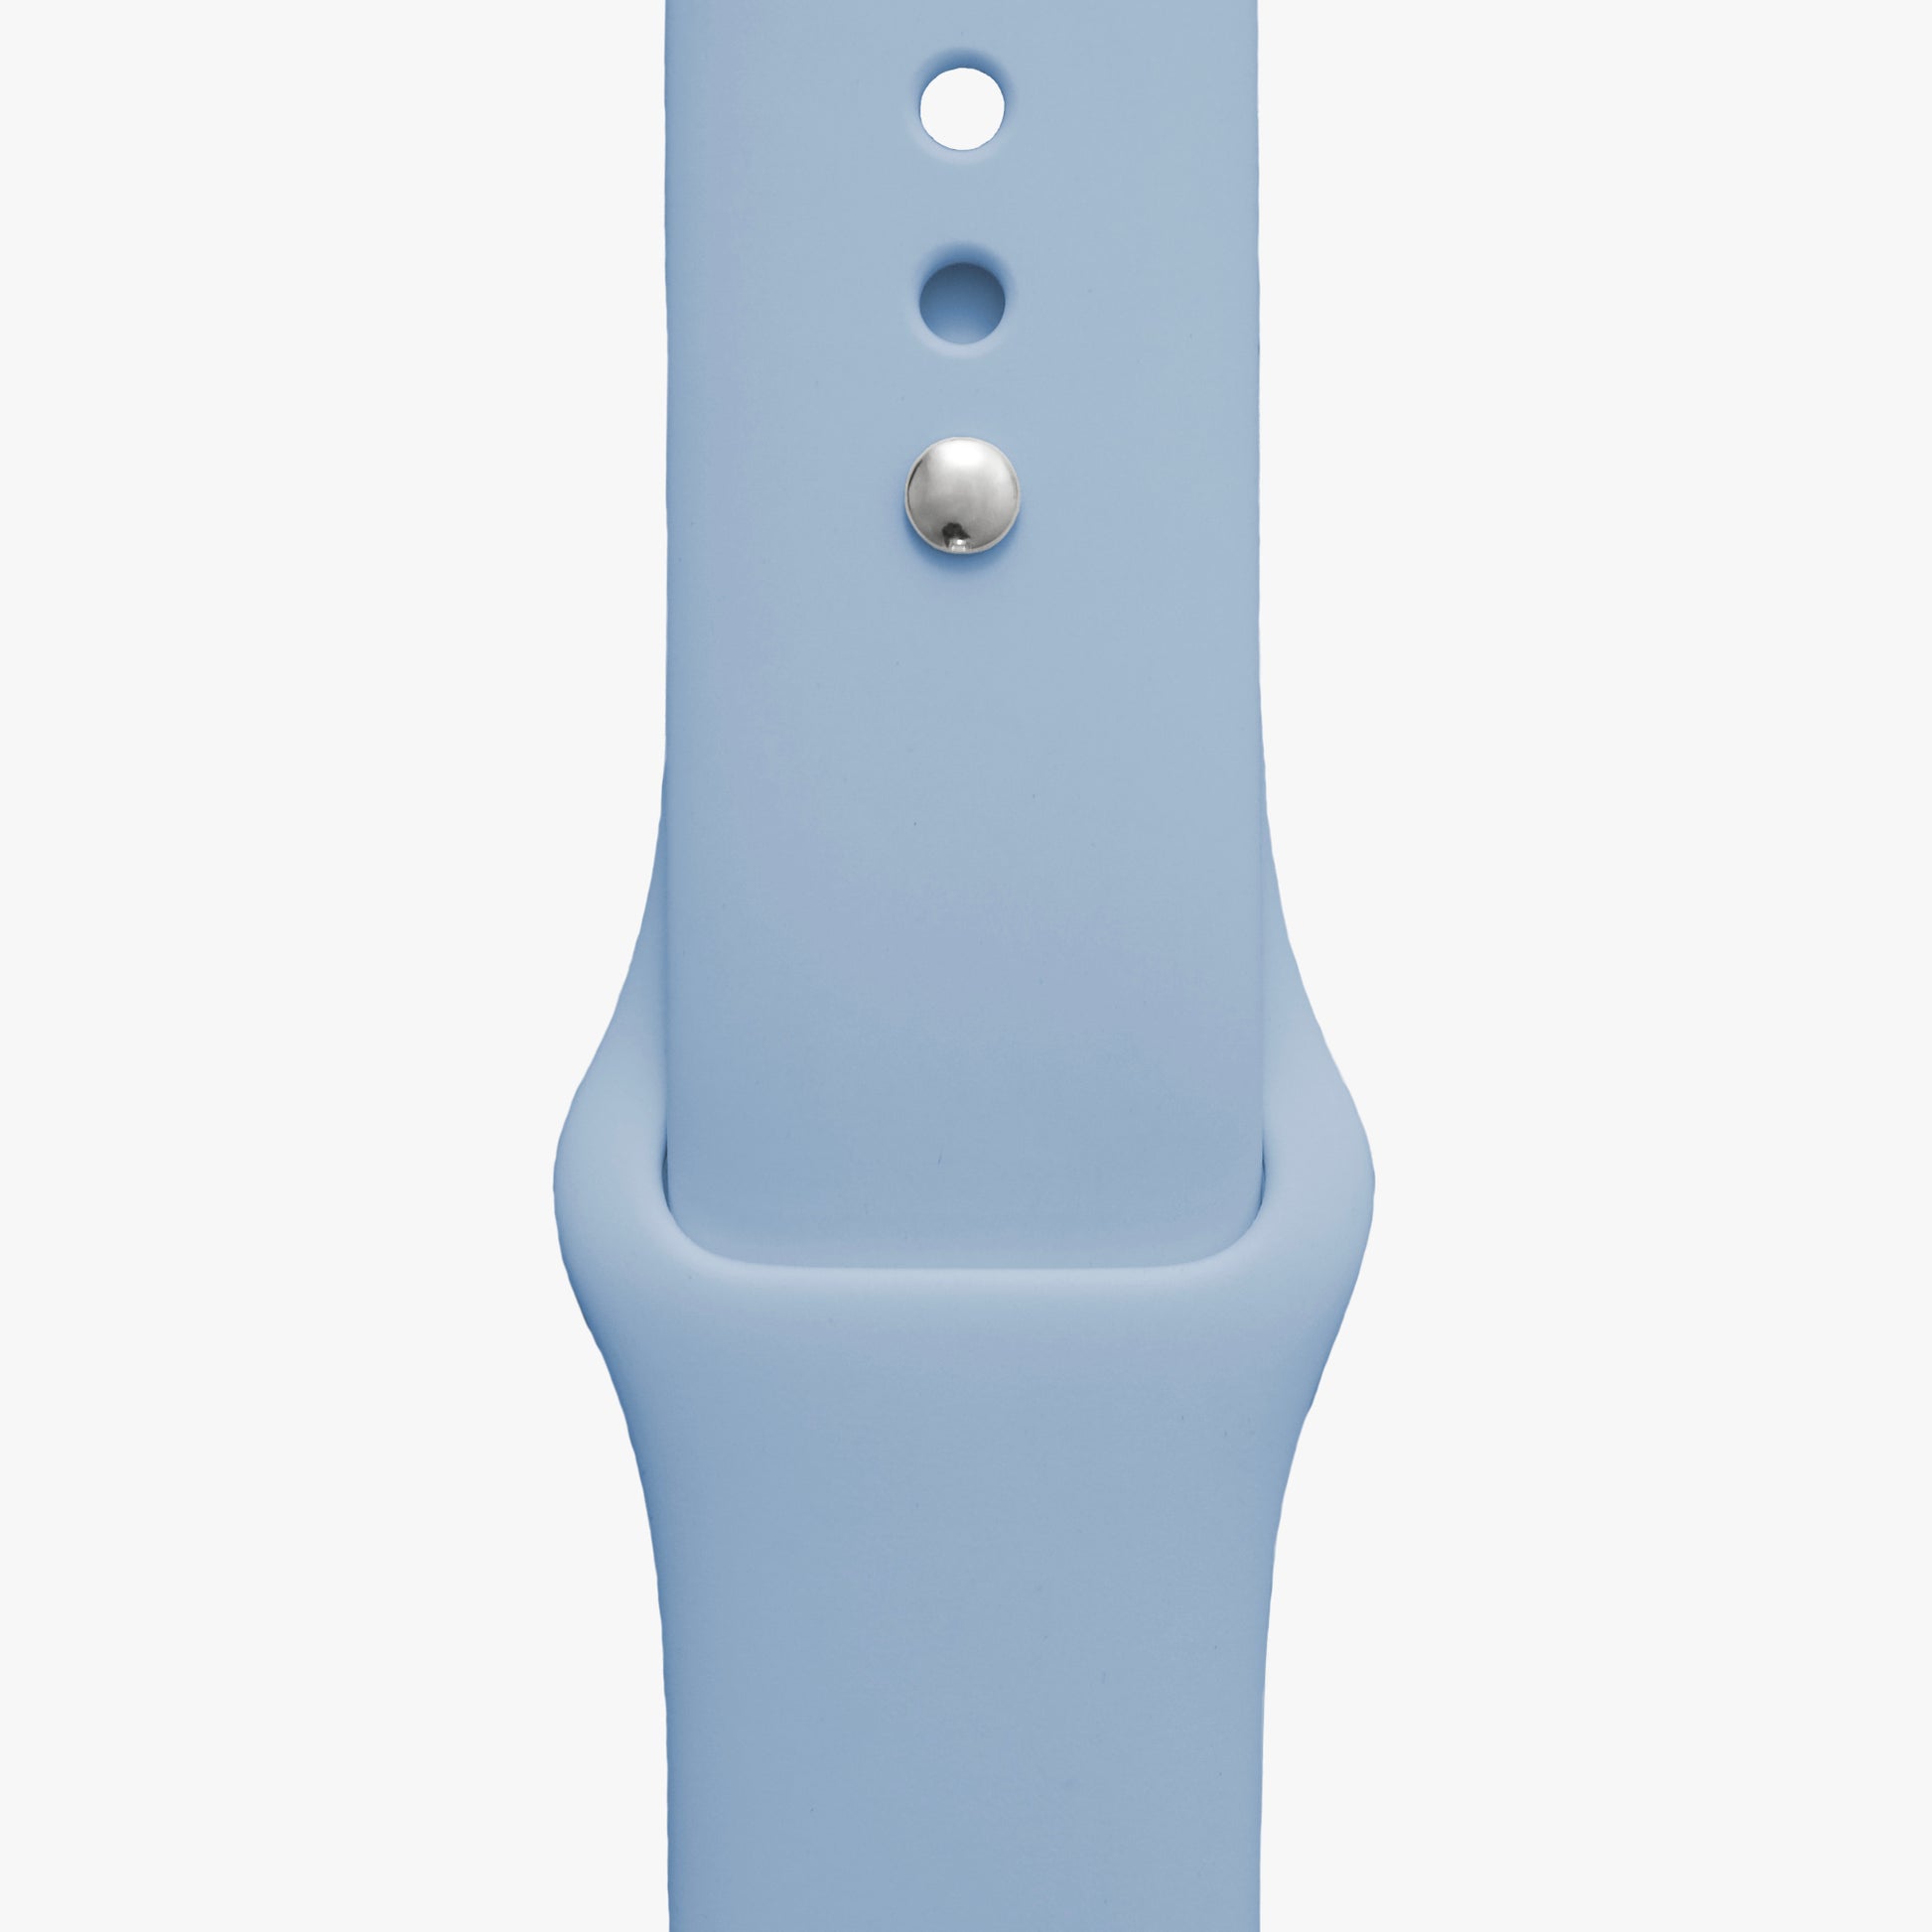 Sportarmband für Apple Watch in hellblau - 2 Größen in Länge S/M + M/L